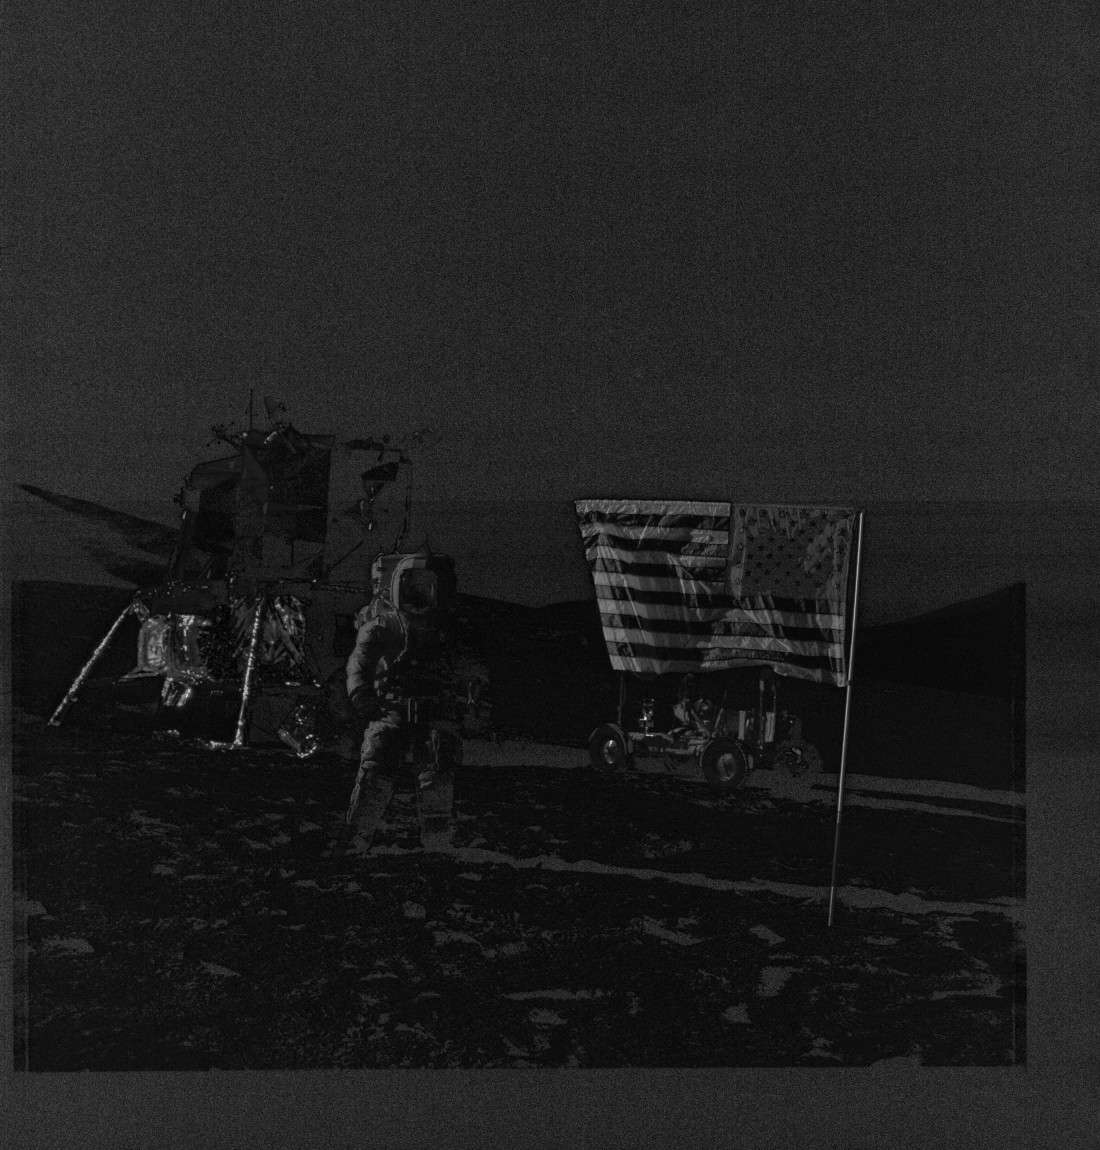 Apollo 17 Image - AS17-134-20382 - Smoking Gun Proof of Image Tampering 20382g10